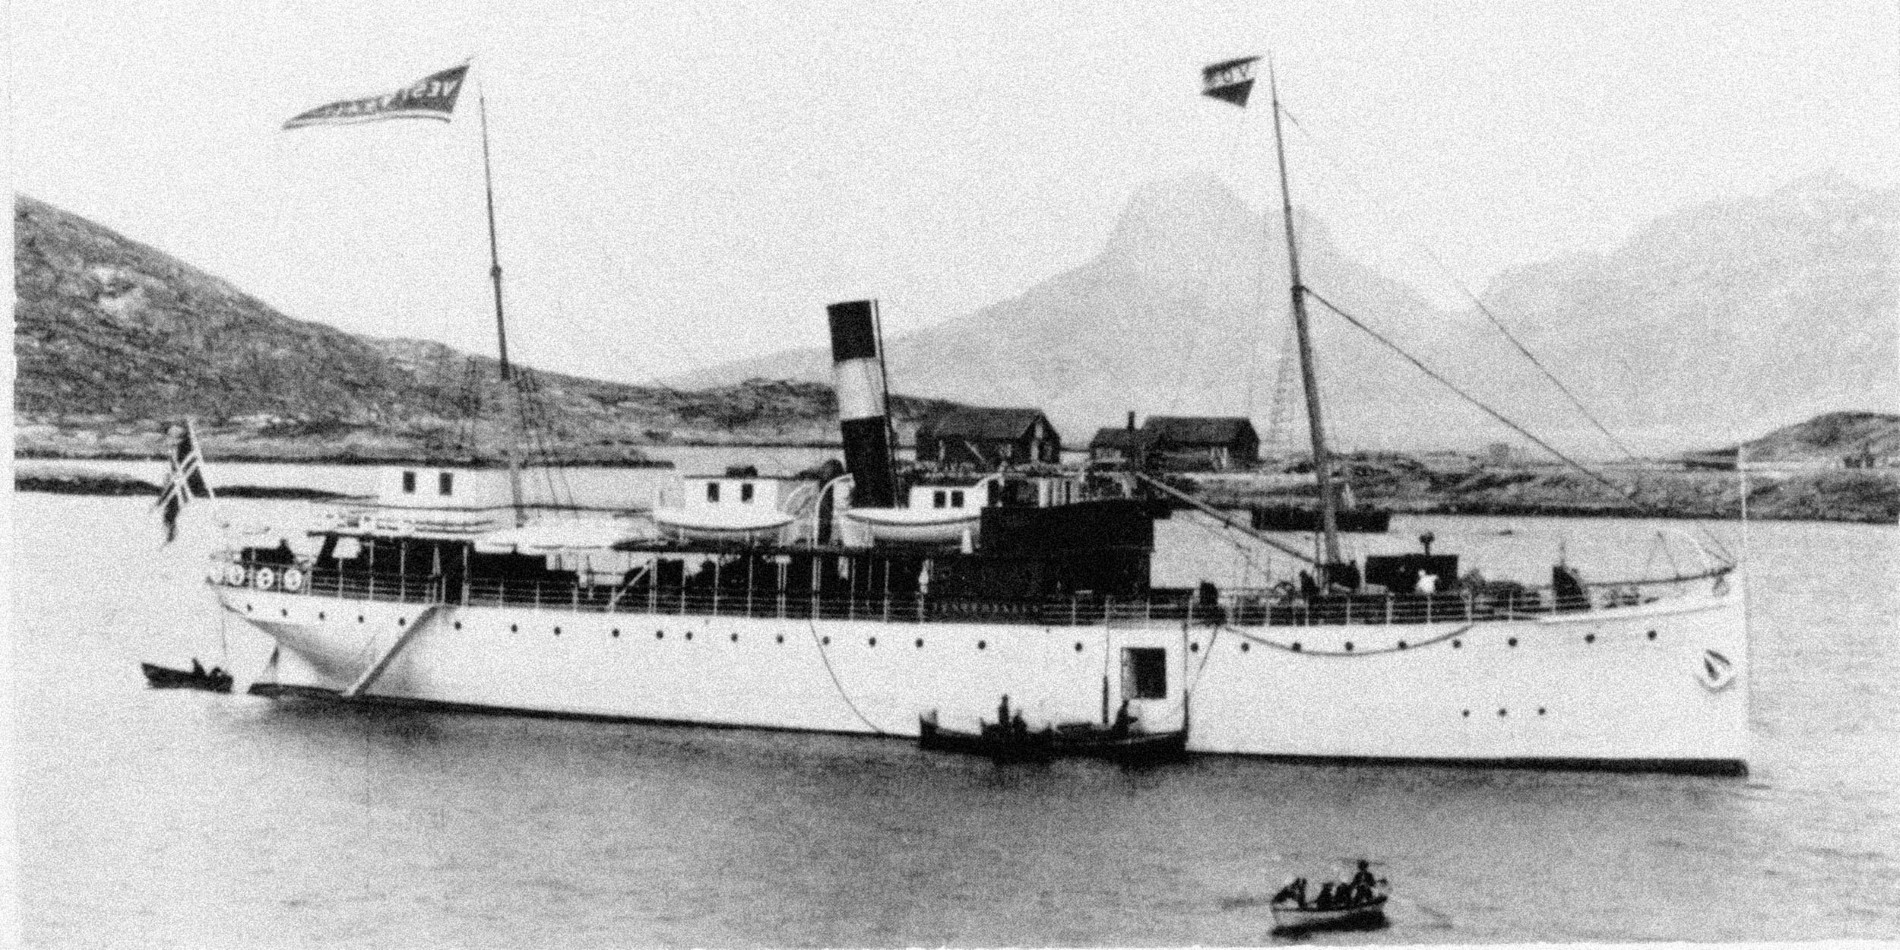 July 2nd in 1893 the first Hurtigruten ship DS Vesteraalen left Trondheim on her maiden voyage